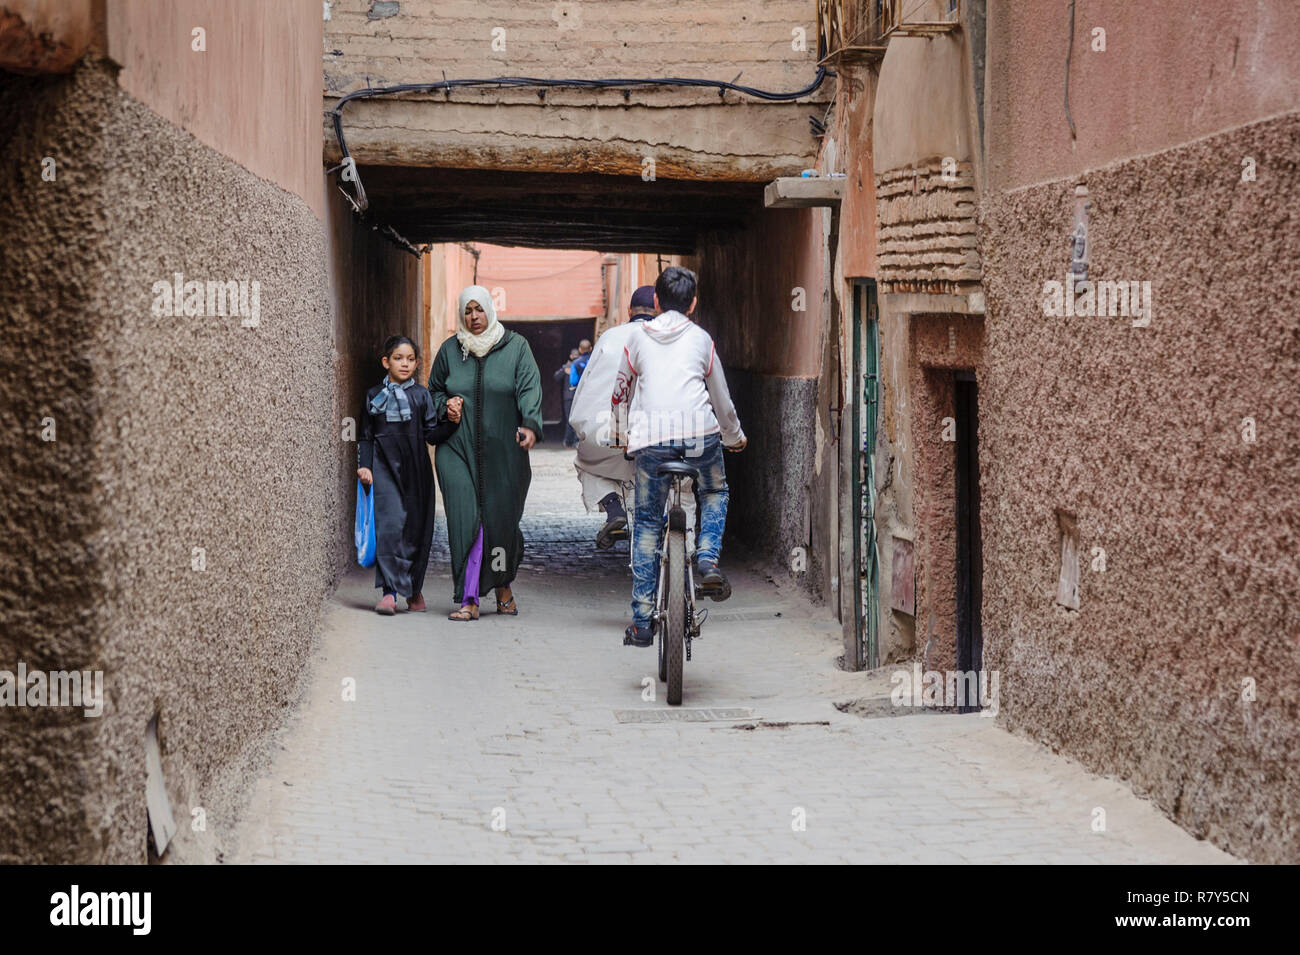 05-03-15, Marrakech, Marocco. Scena di strada nel souk della medina, nella vecchia, antico, parte della citta'. Ragazzi su biciclette passano una madre e daugh Foto Stock